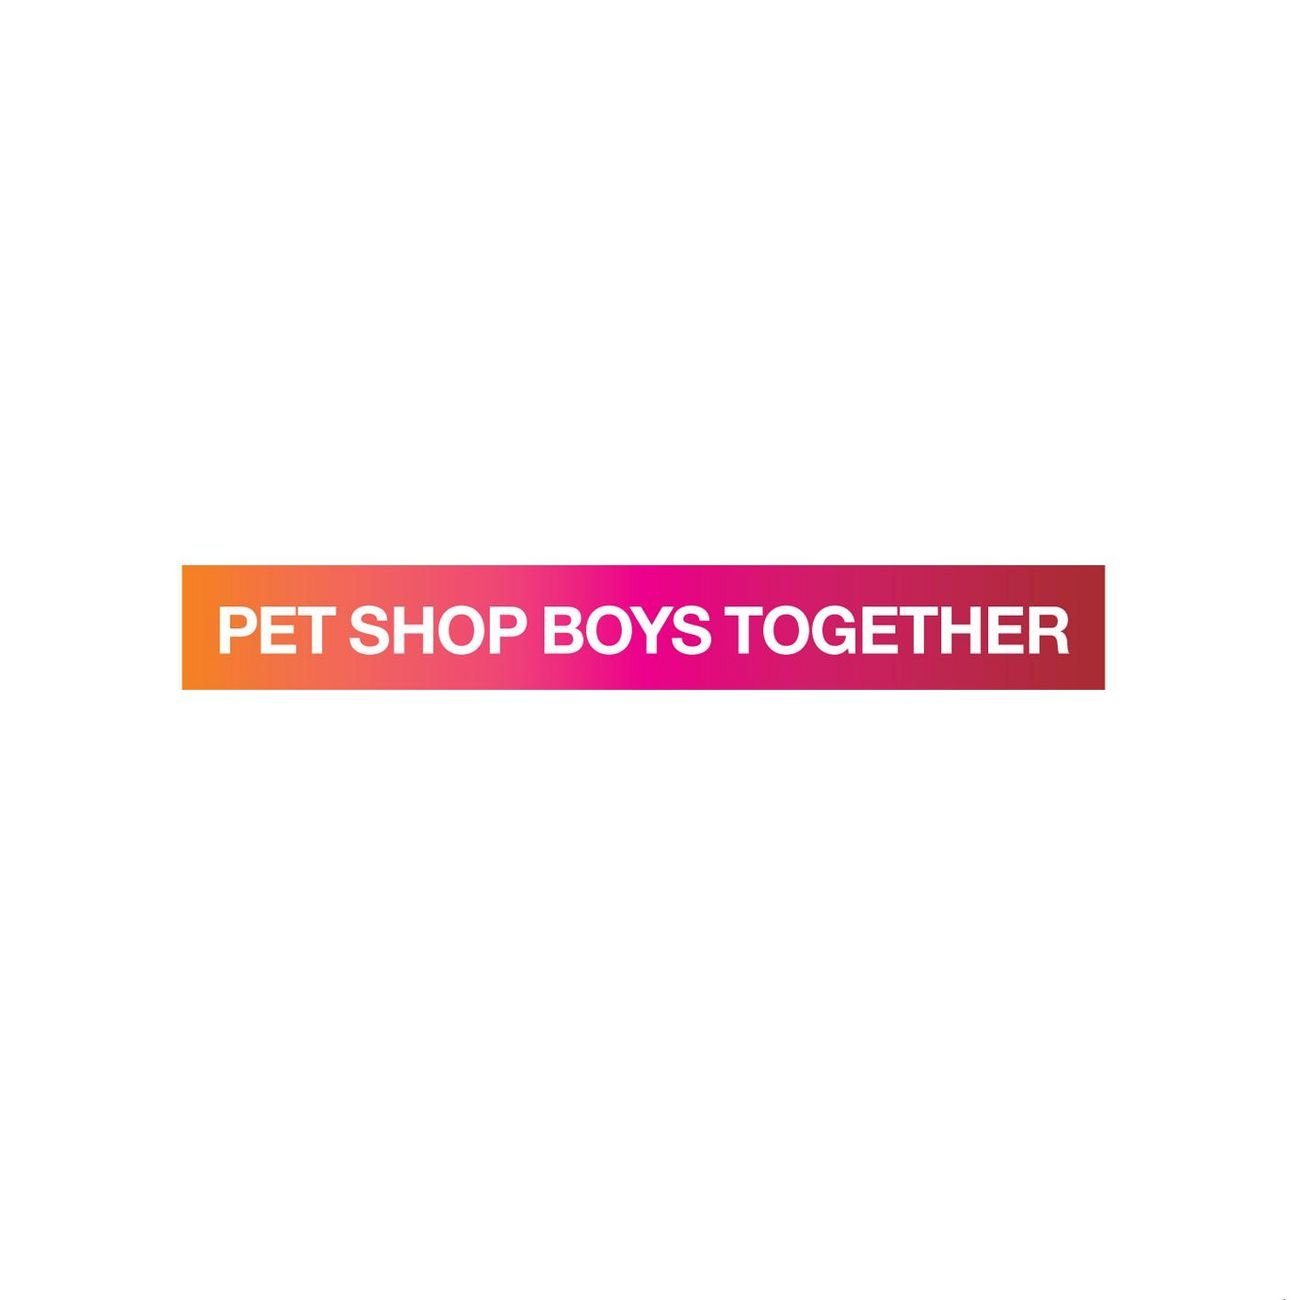 Pet shop boys текст